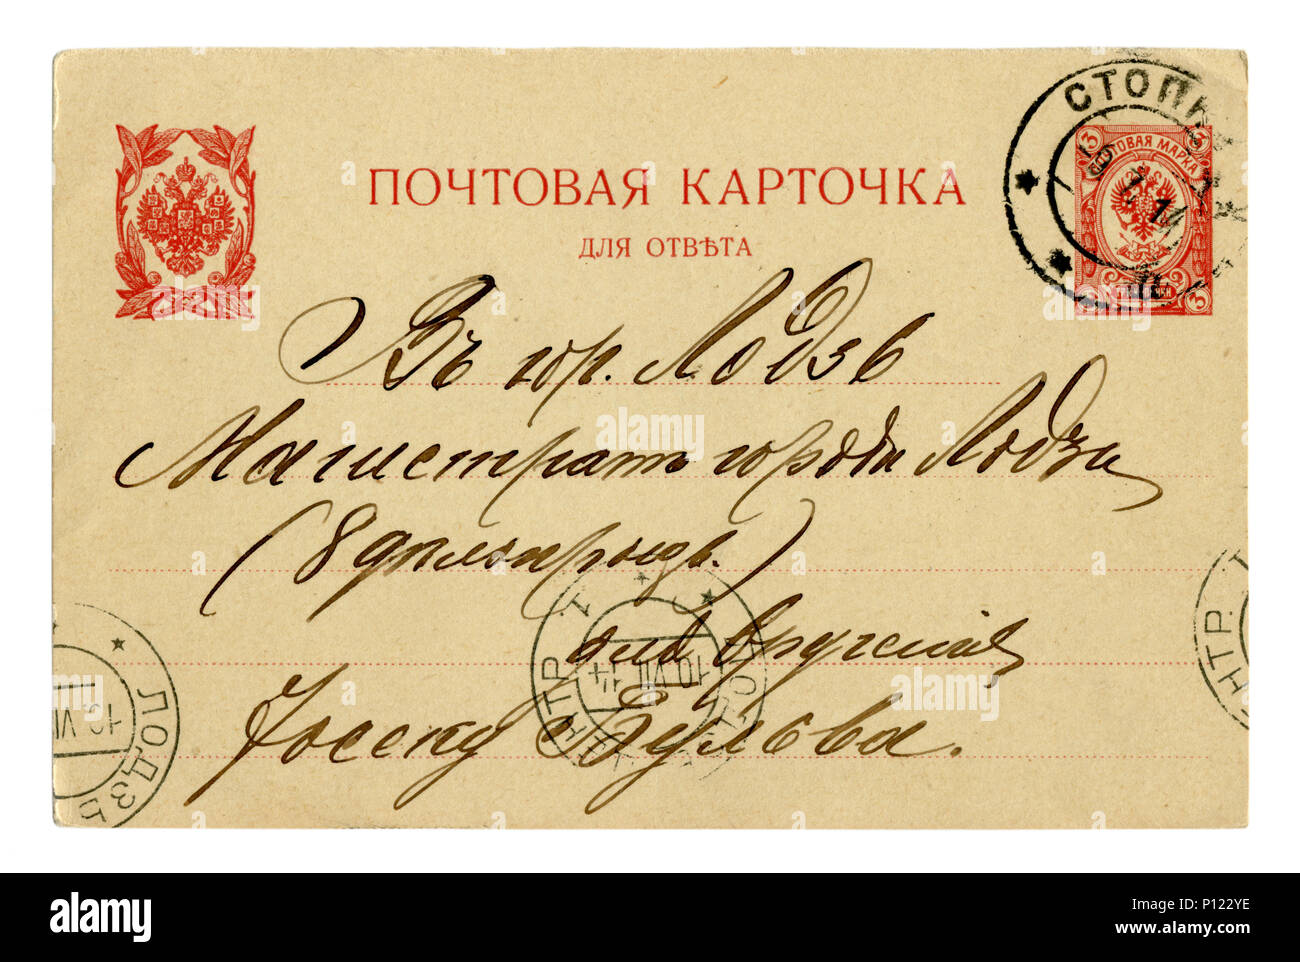 Carte postale historique russe : lettre à l'encre noire au magistrat de Lodz sur du papier. Timbre imprimé. Le cachet de la poste. 1914, Pologne, Russie Banque D'Images